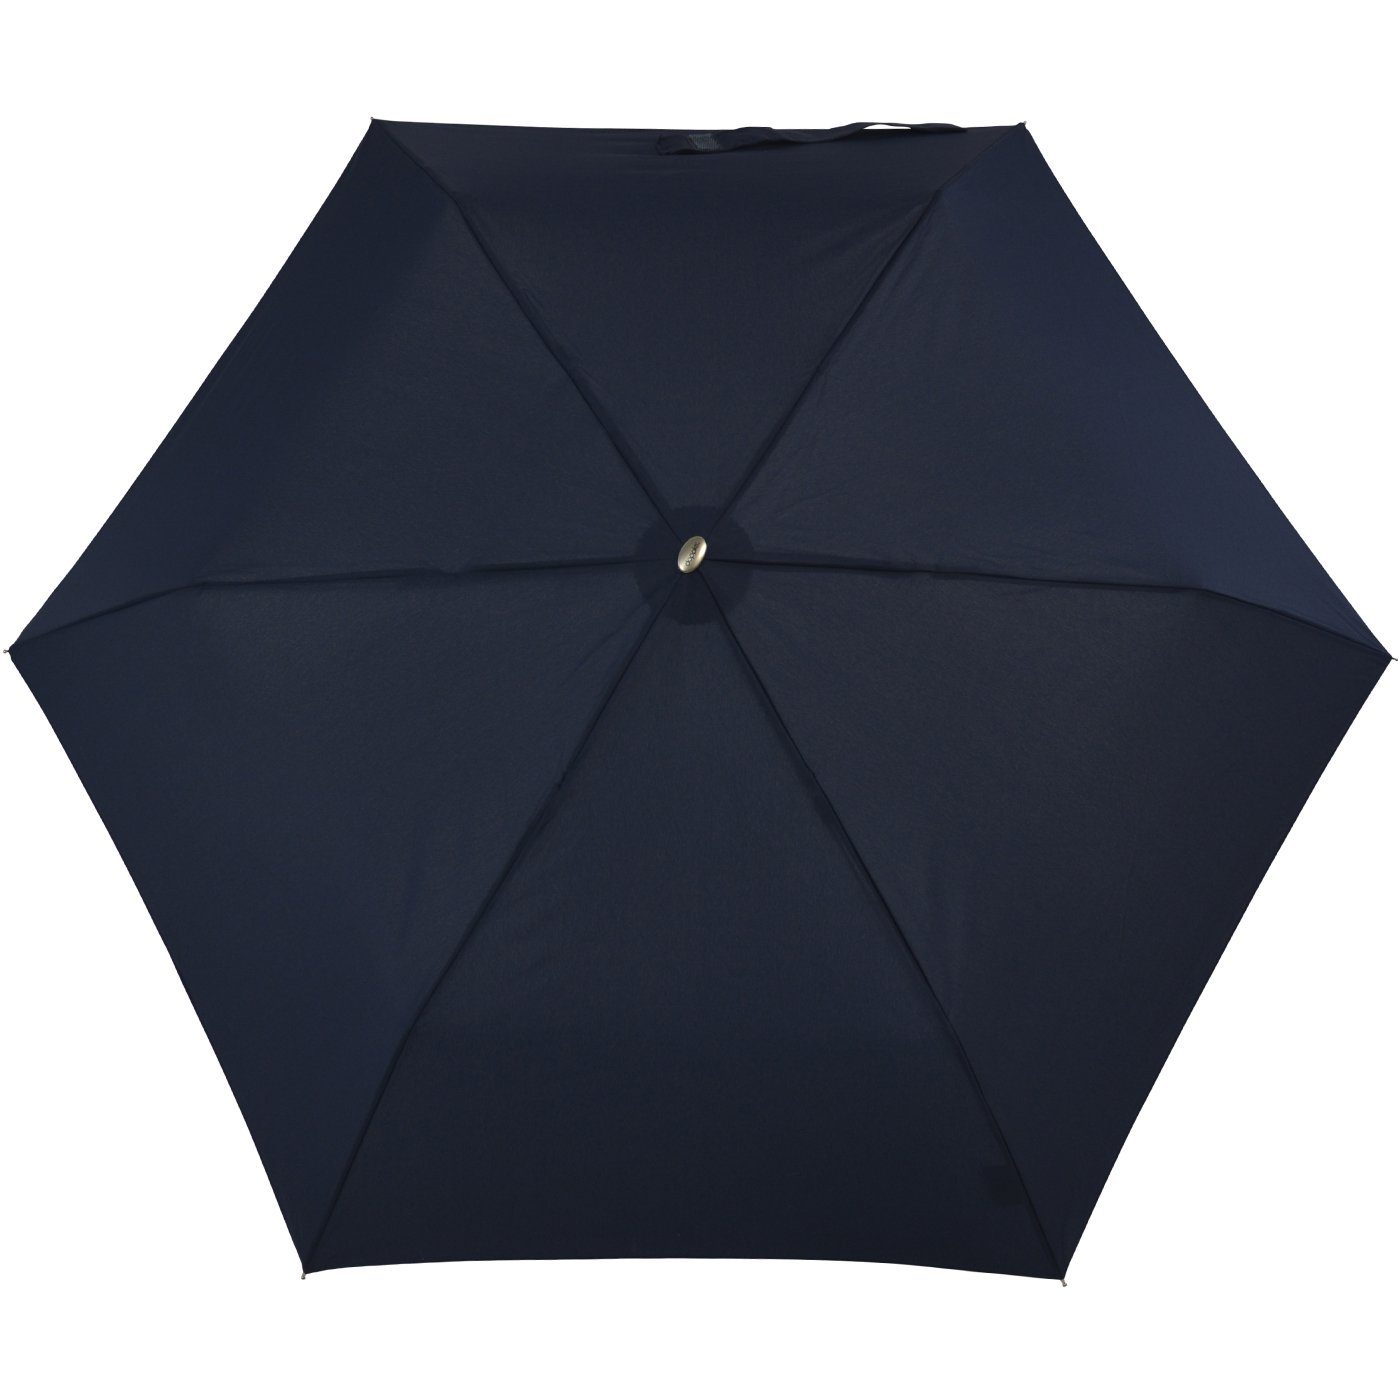 Schirm leichter für Langregenschirm ein jede findet doppler® Begleiter treue Tasche, flacher überall dieser und Platz